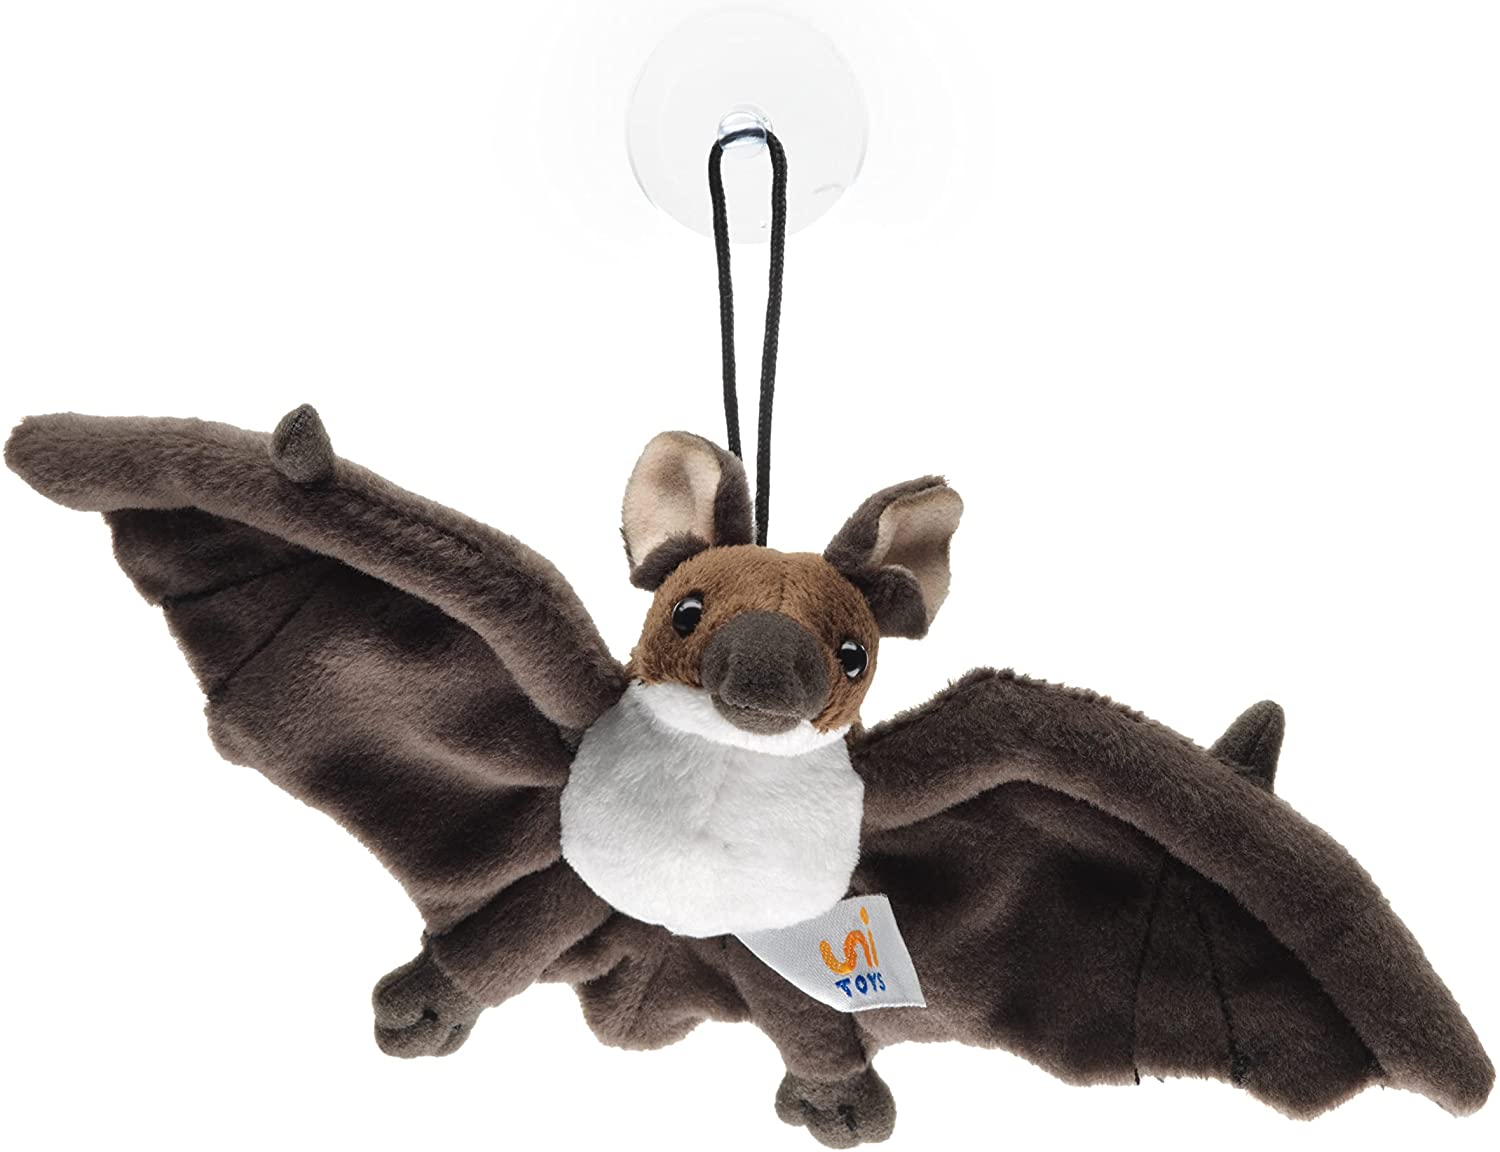 Uni-Toys - Fledermaus, braun klein Saugnapf - 23 cm (Breite) - Plüschtier, Kuscheltier … 